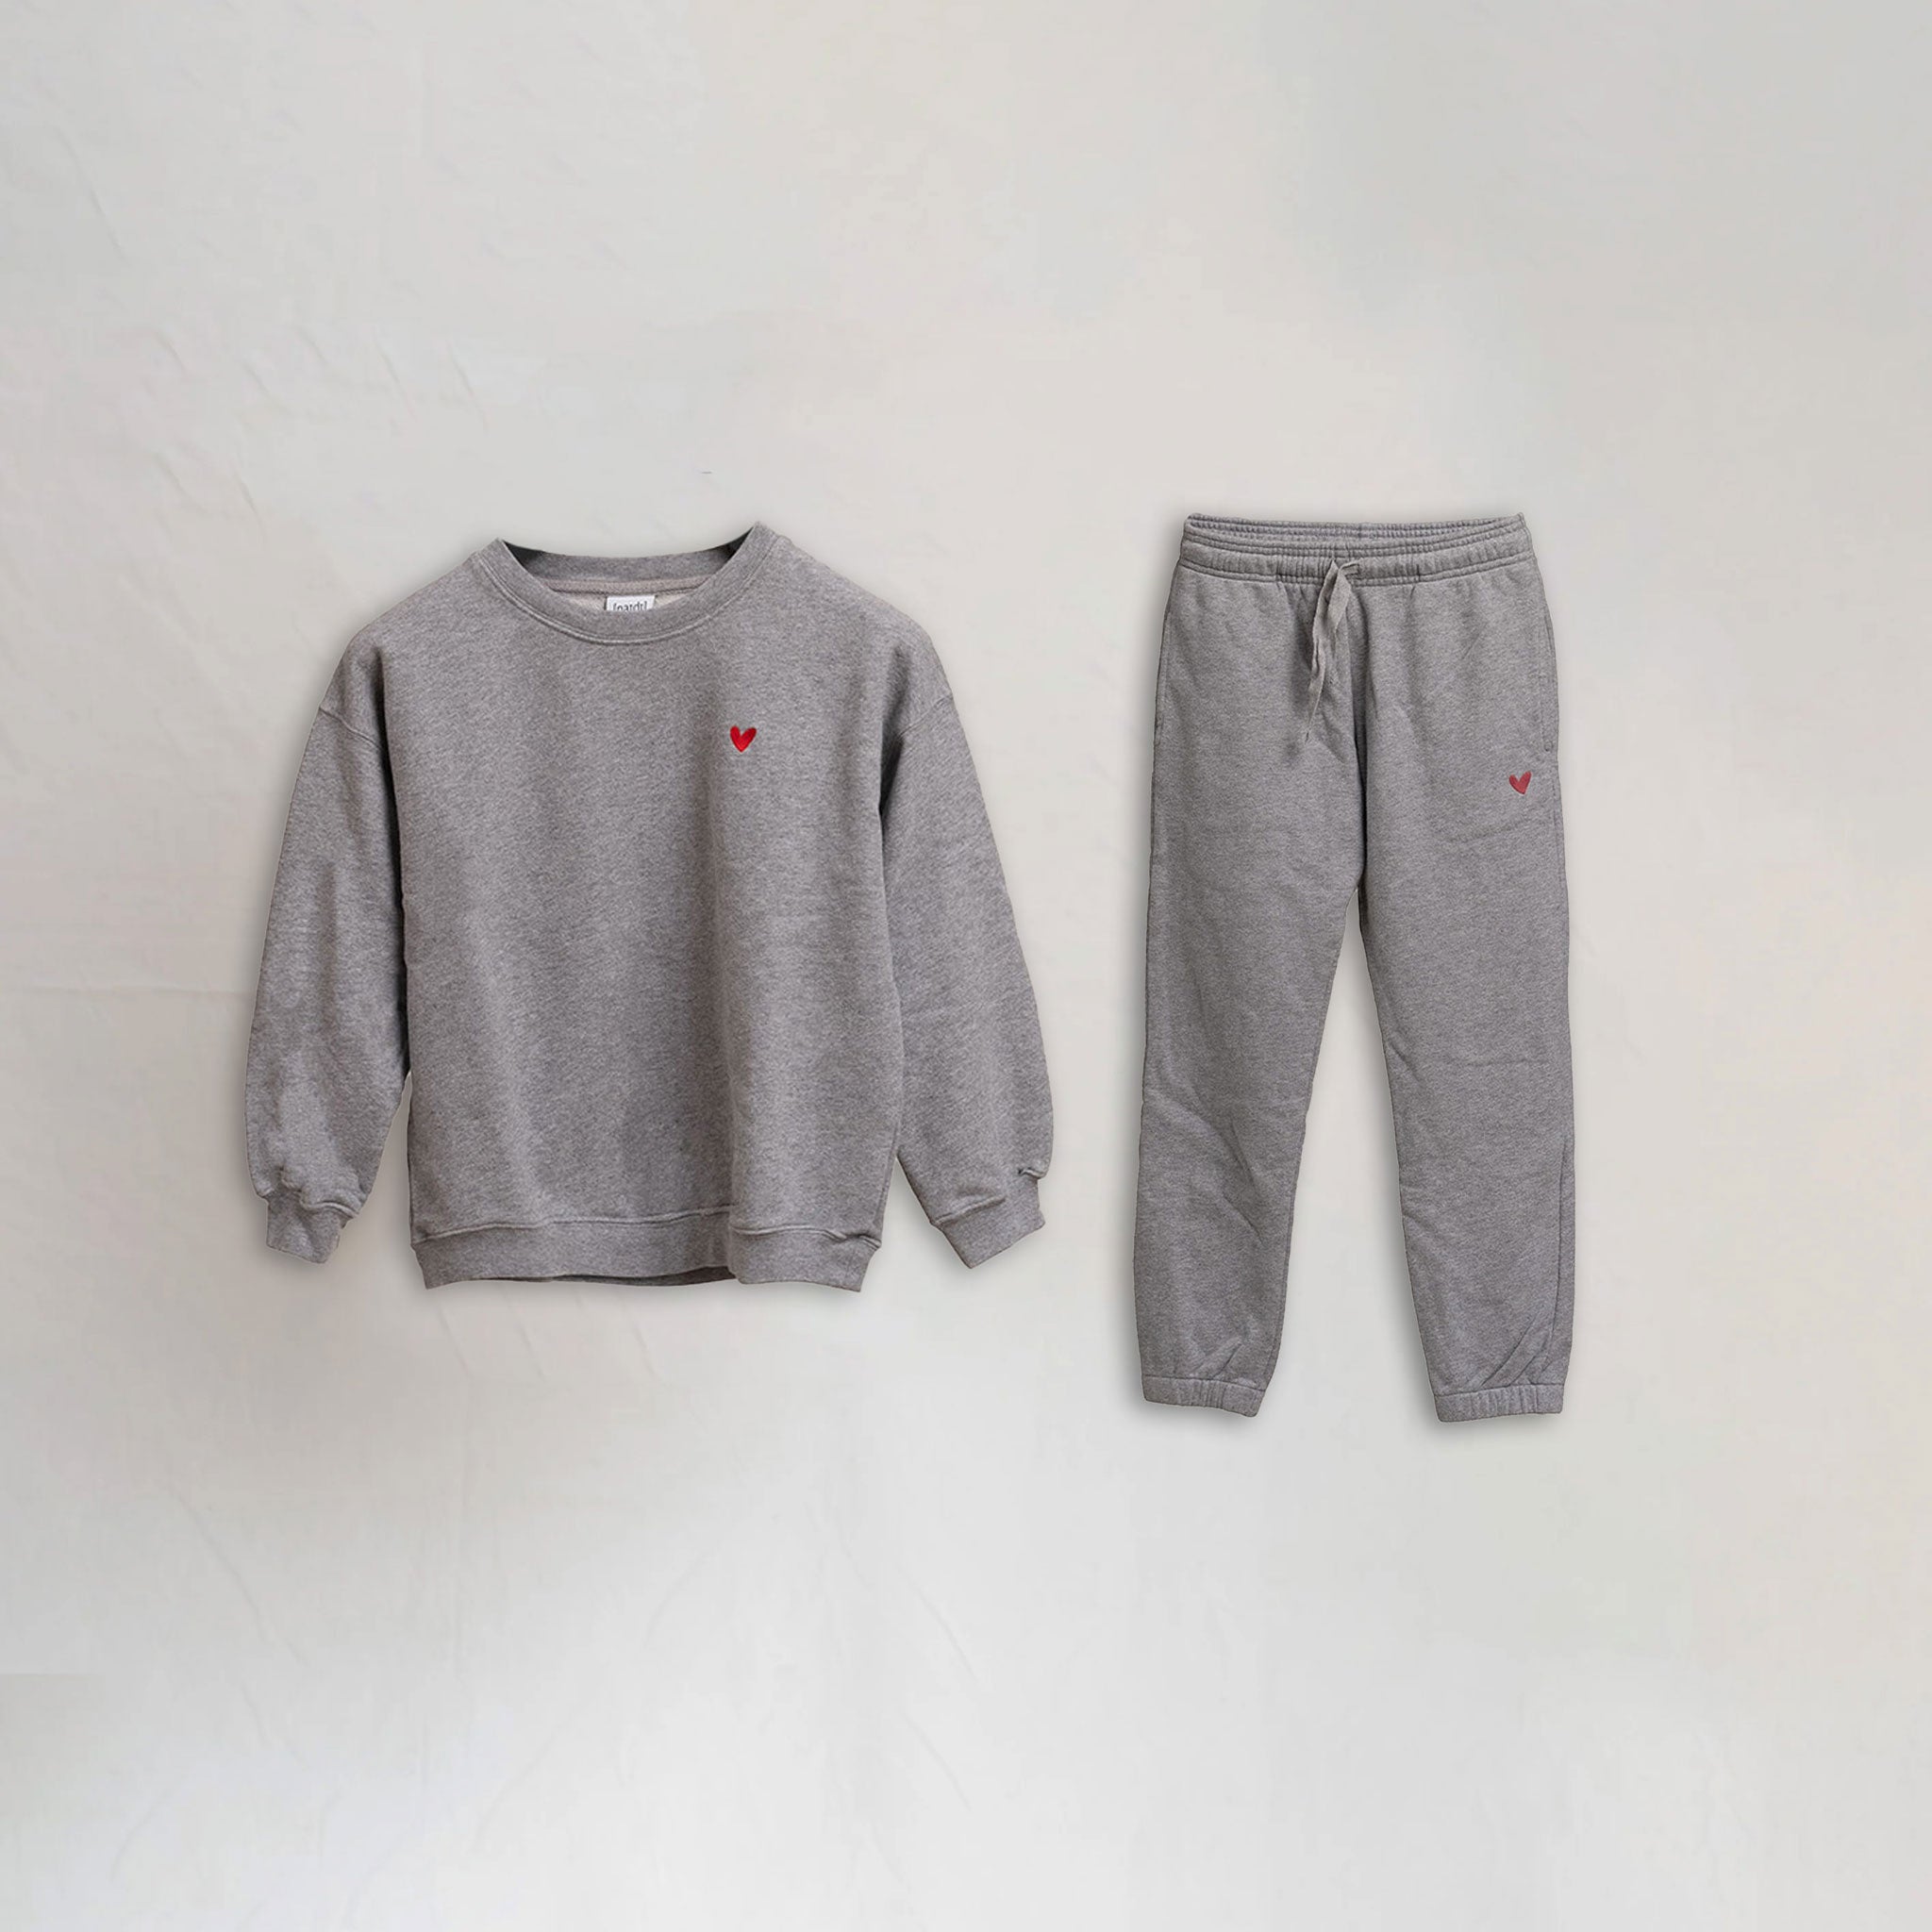 Kinder Set - Sweatshirt / Jogginghose - Gift